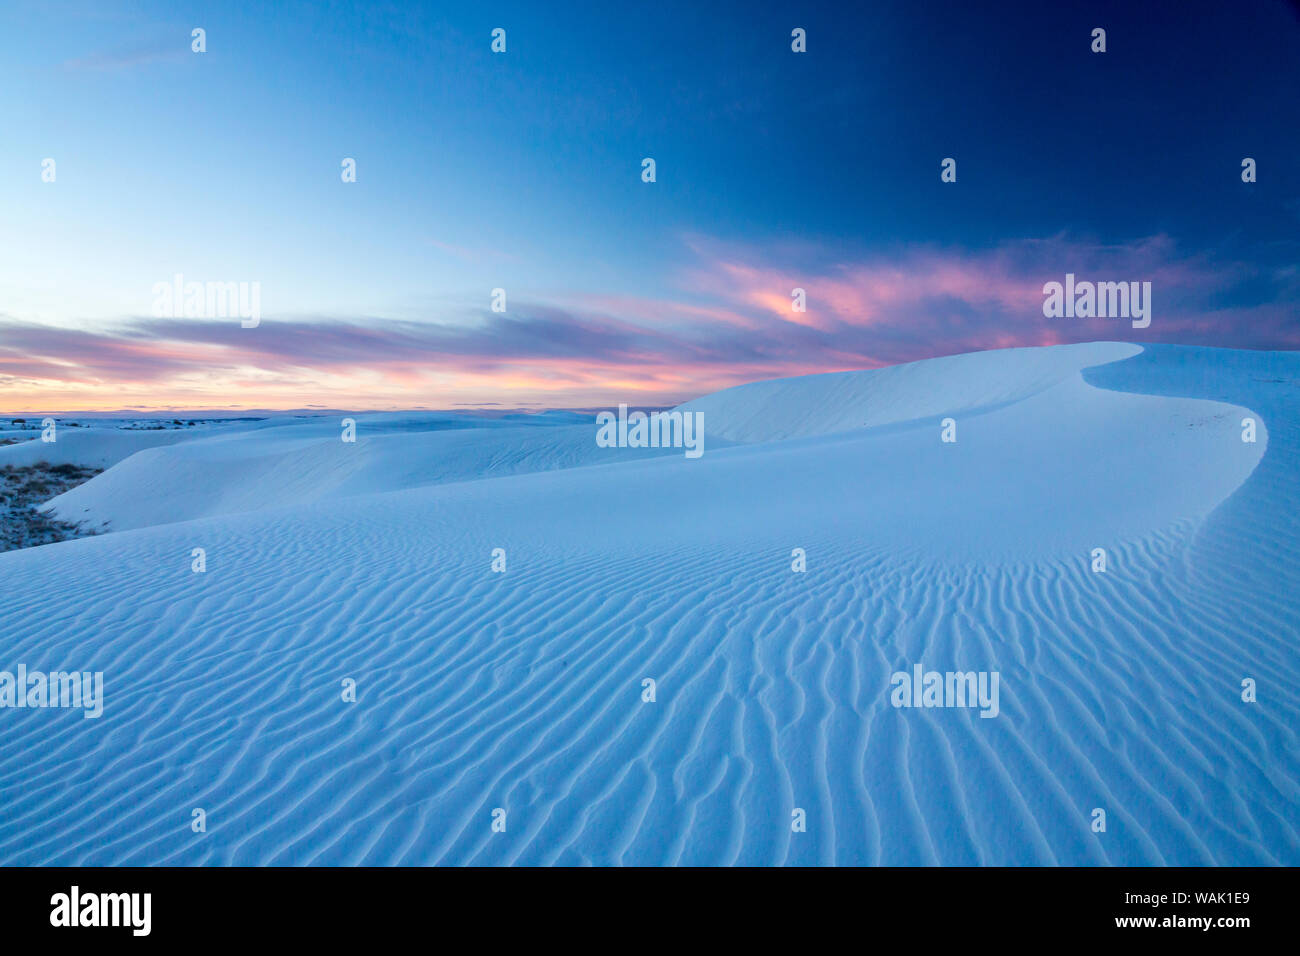 USA, Nouveau Mexique, White Sands National Park. Dunes de sable au lever du soleil. En tant que crédit : Cathy & Gordon Illg / Jaynes Gallery / DanitaDelimont.com Banque D'Images